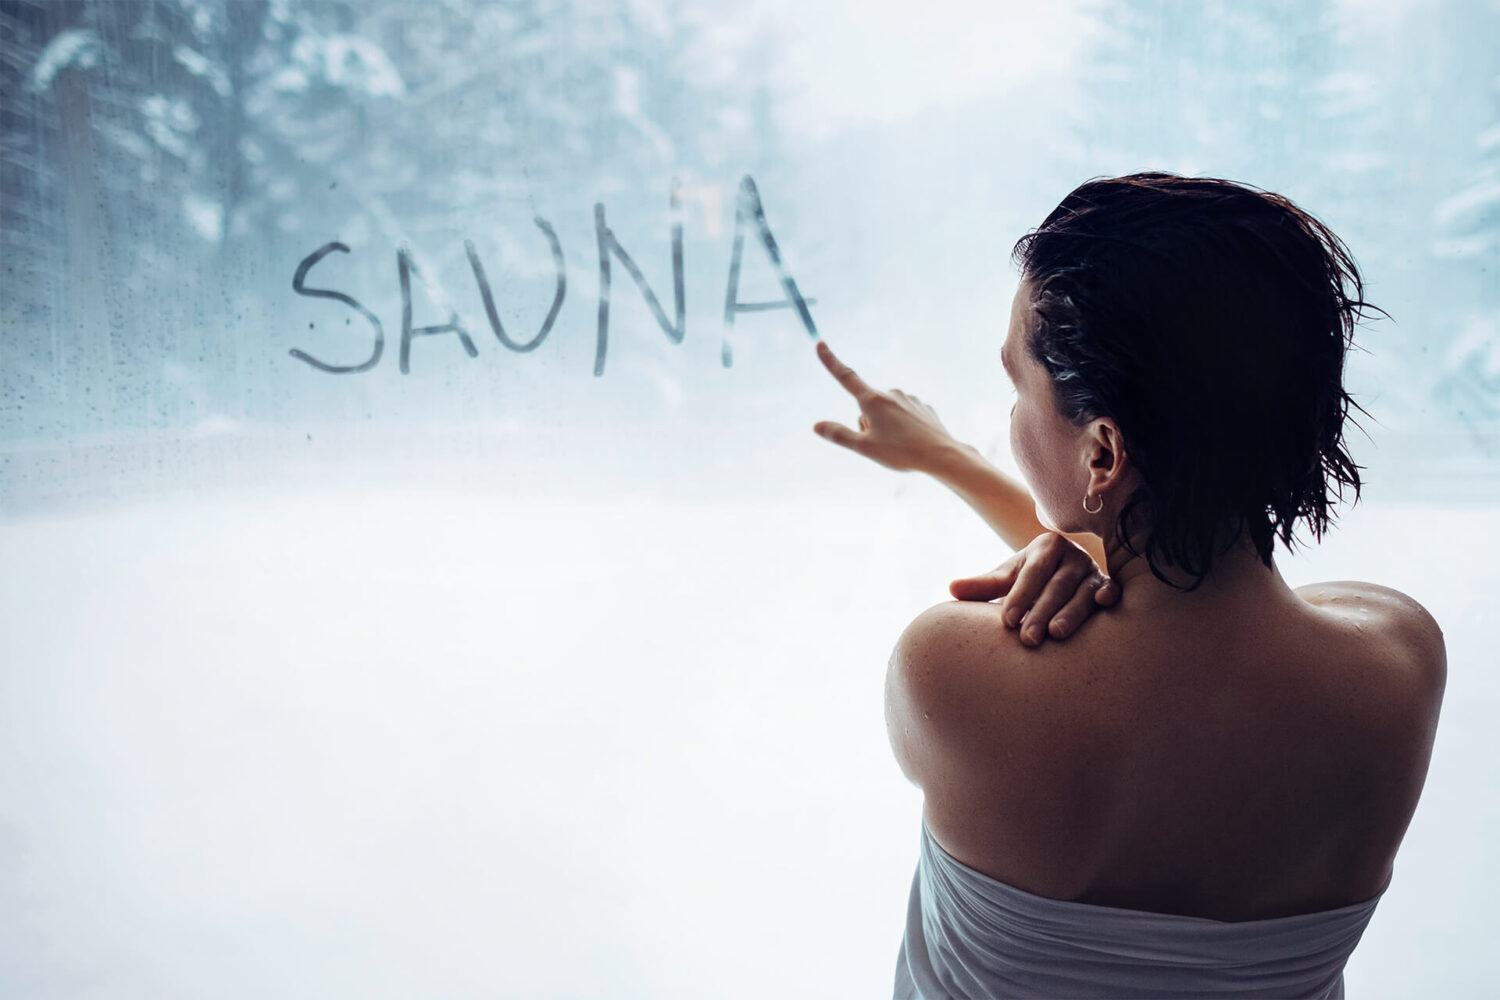 Eine Frau schreibt mit ihrem Finger auf einem beschlagene Saunafenster das Wort "SAUNA".